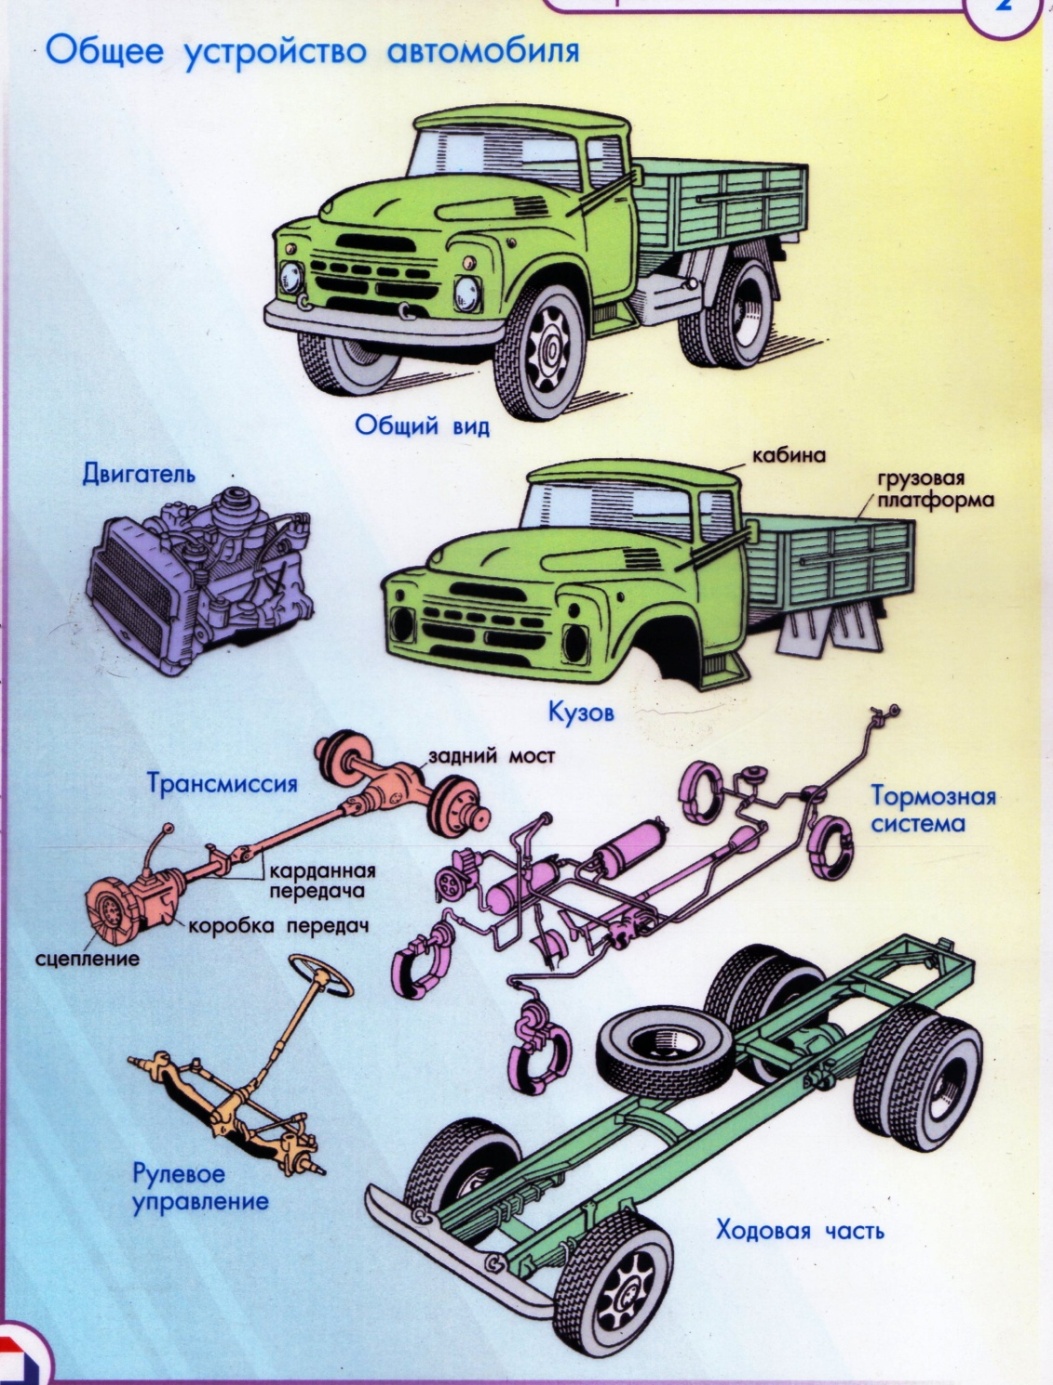 Части автомобиля не менее. Основные части автомобиля двигатель кузов и шасси. Устройство автомобиля: основные узлы и агрегаты. Основные части автомобиля схема. Двигатель шасси кузов.